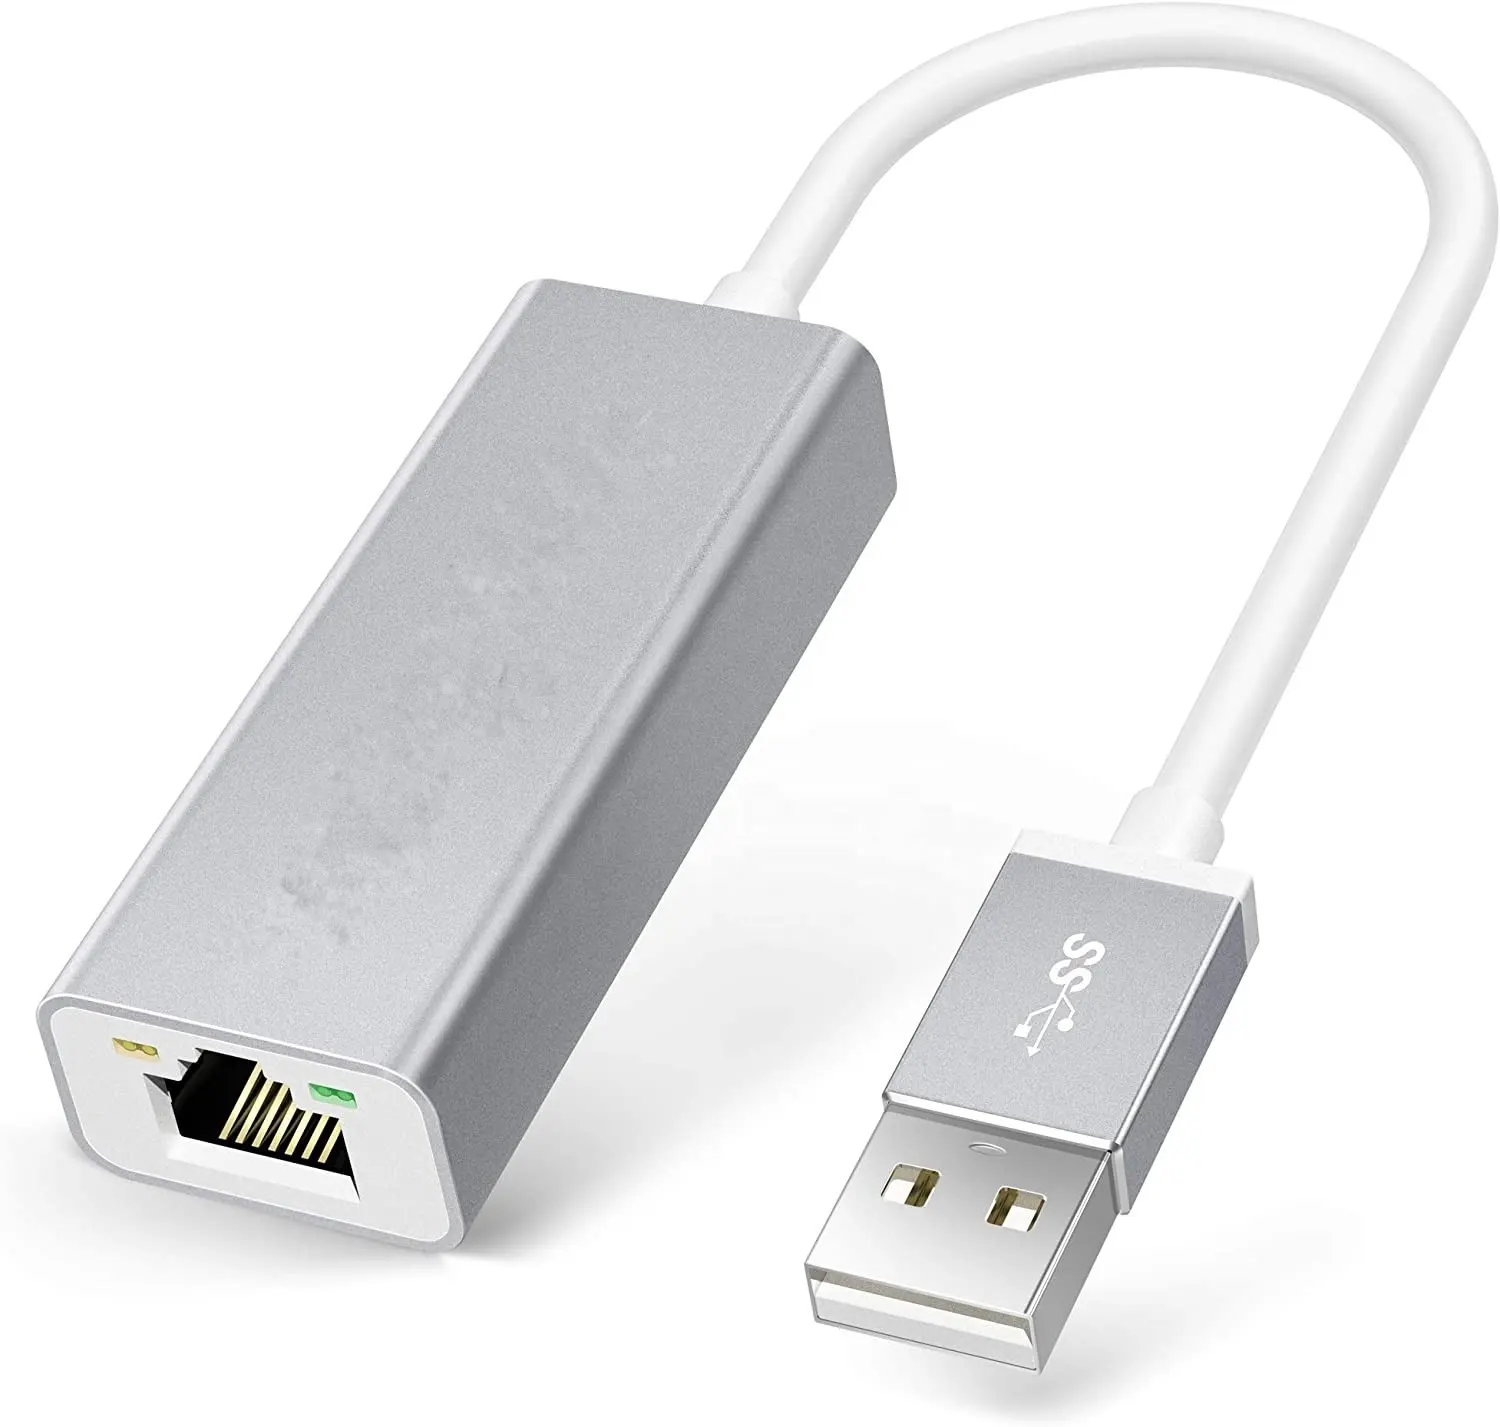 Adaptador Ethernet USB para Nintendo Wii U interruptor de conexión a Internet y Mac portátil Windows adaptador USB LAN